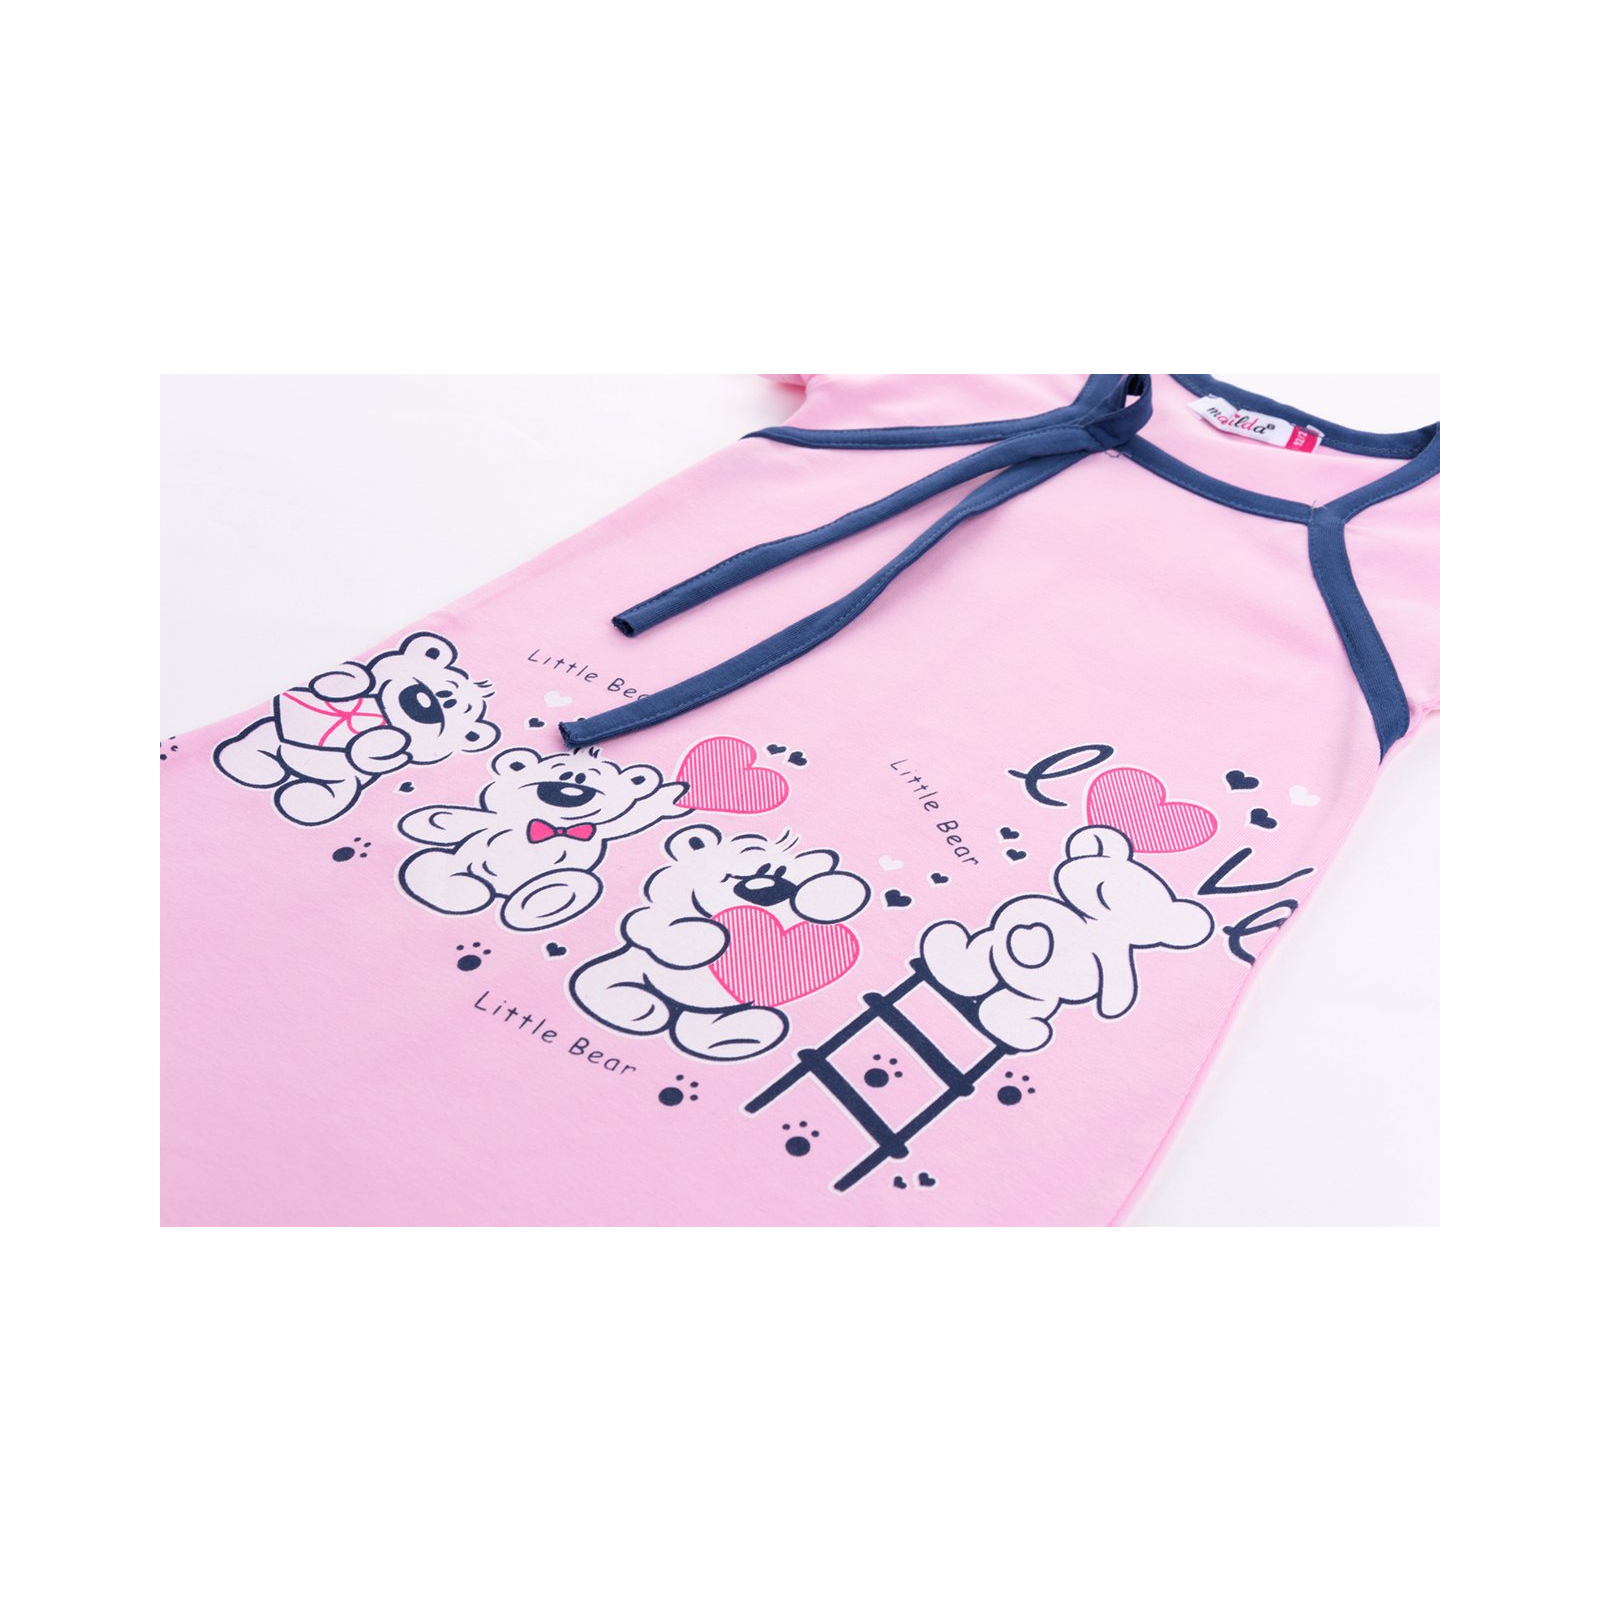 Пижама Matilda и халат с мишками "Love" (7445-92G-pink) изображение 8